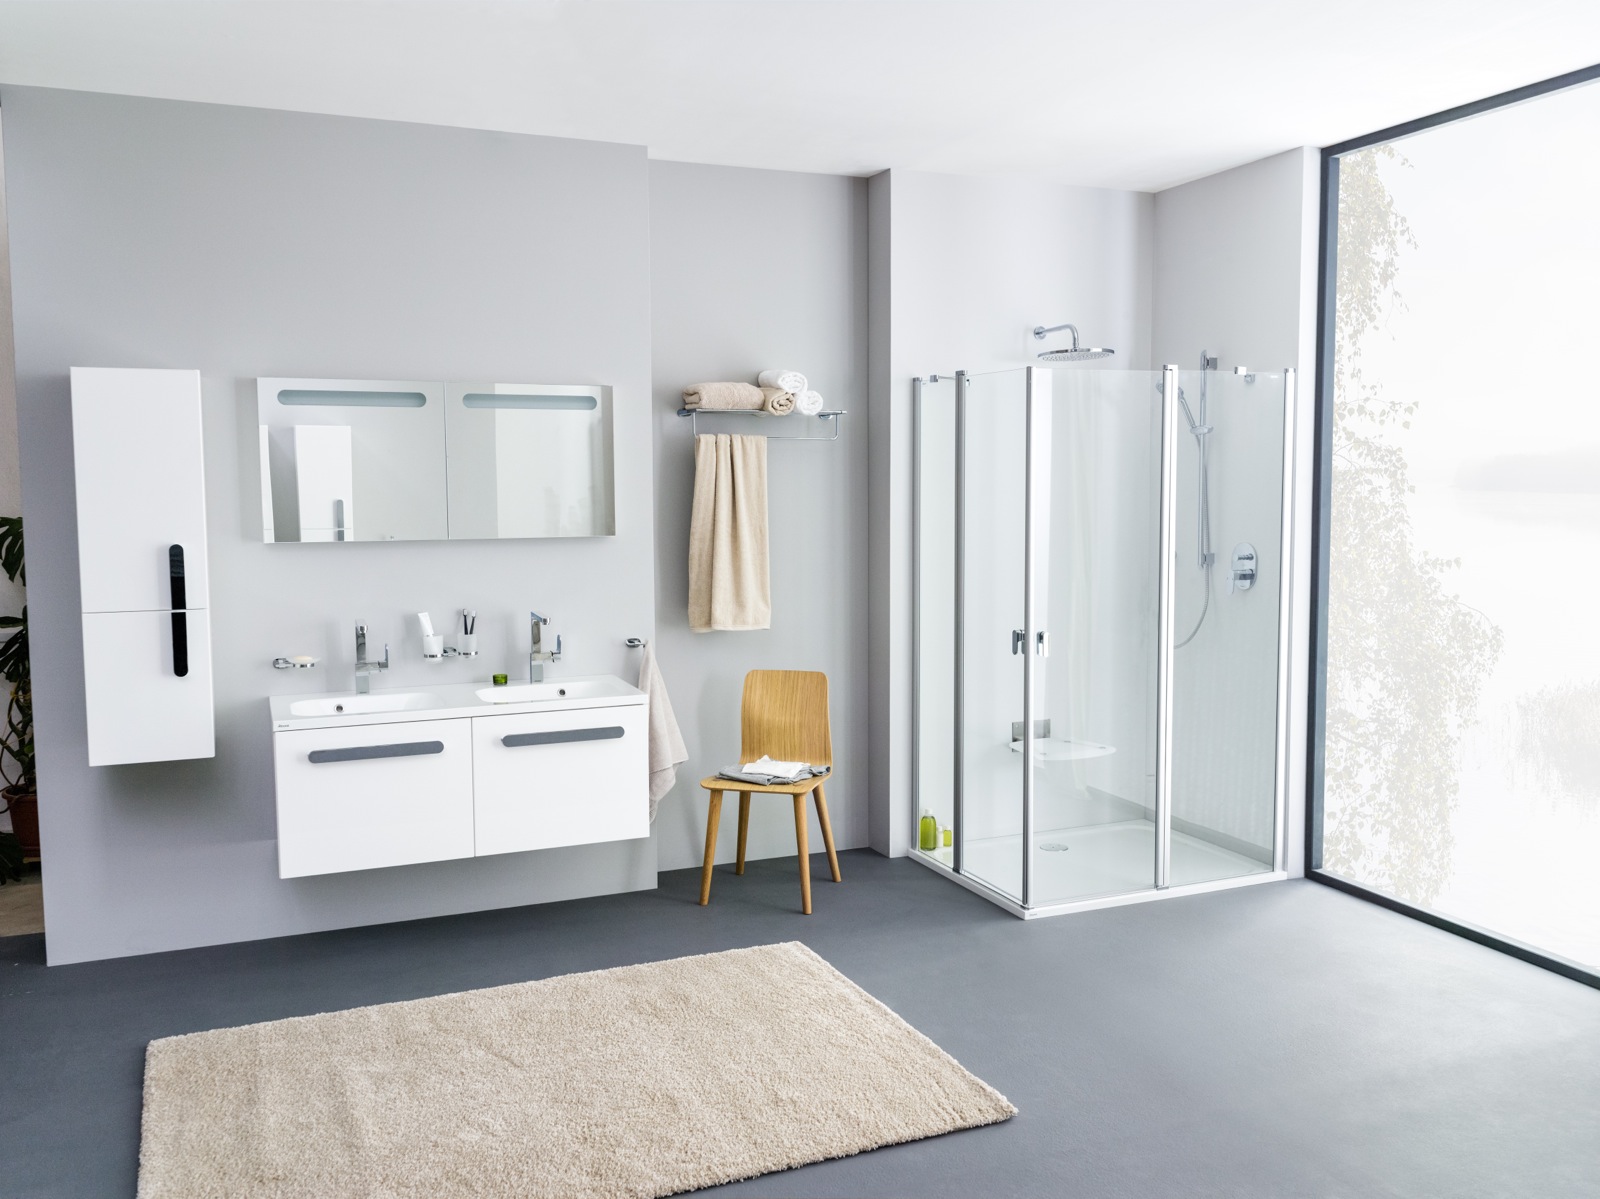 RAVAK tisztítószerekkel mindig üde és jó állapotú marad fürdőszobája, ahogyan ezen a Chrome koncepcióról készült fürdőszoba fotón is jól kivehető.